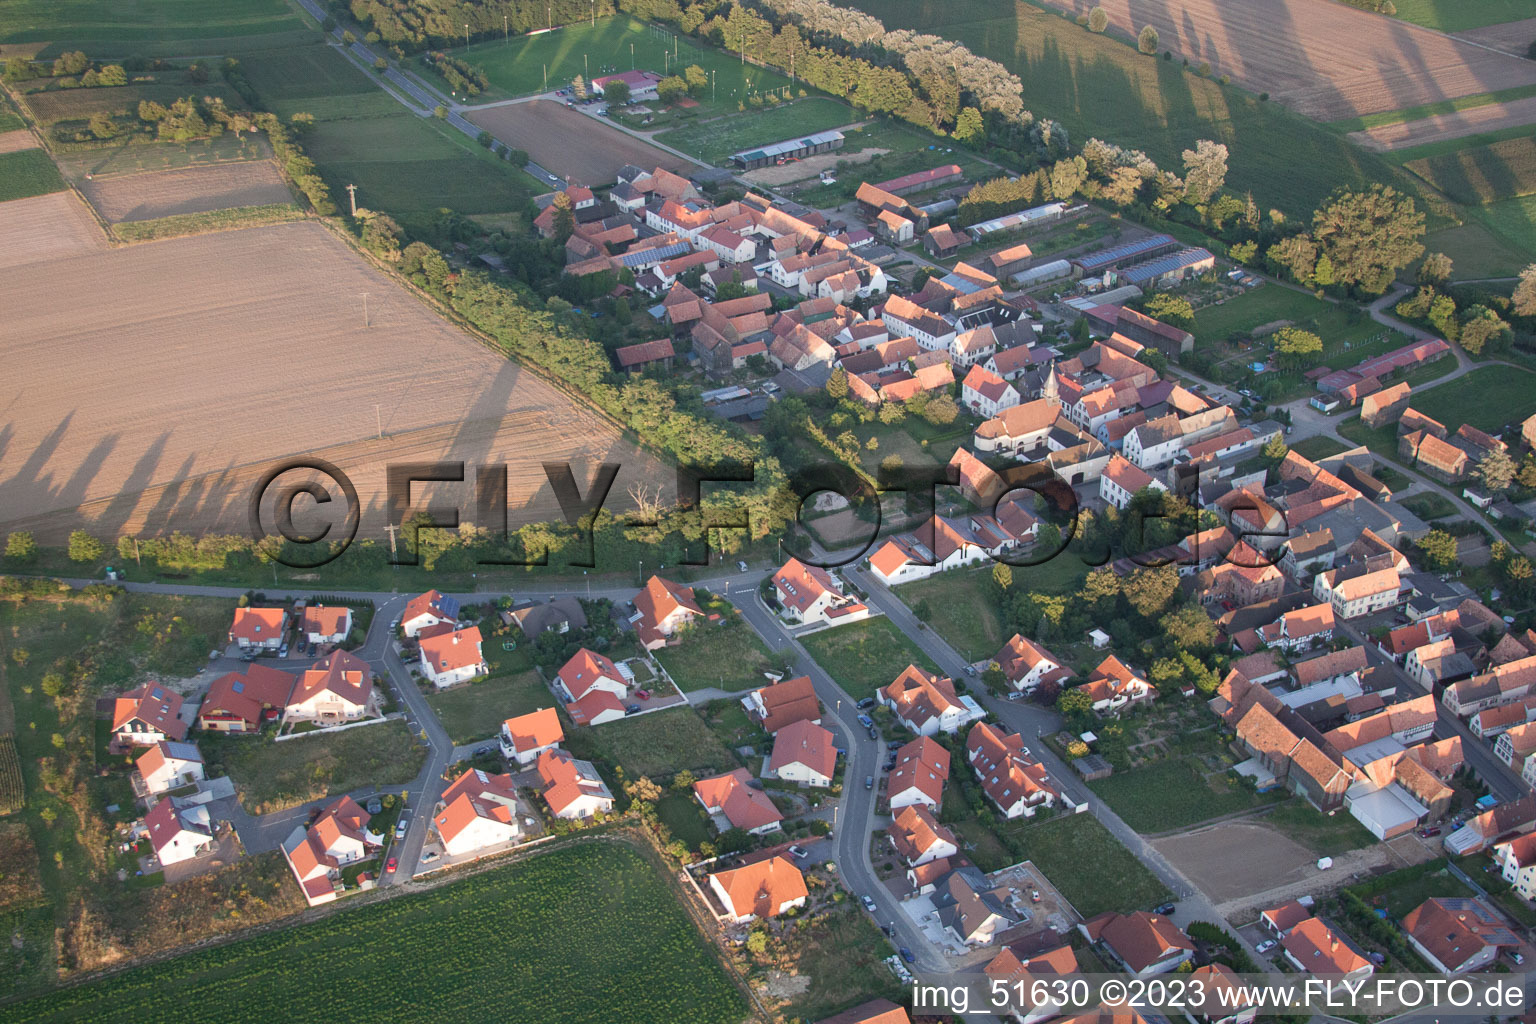 Herxheimweyher in the state Rhineland-Palatinate, Germany from above